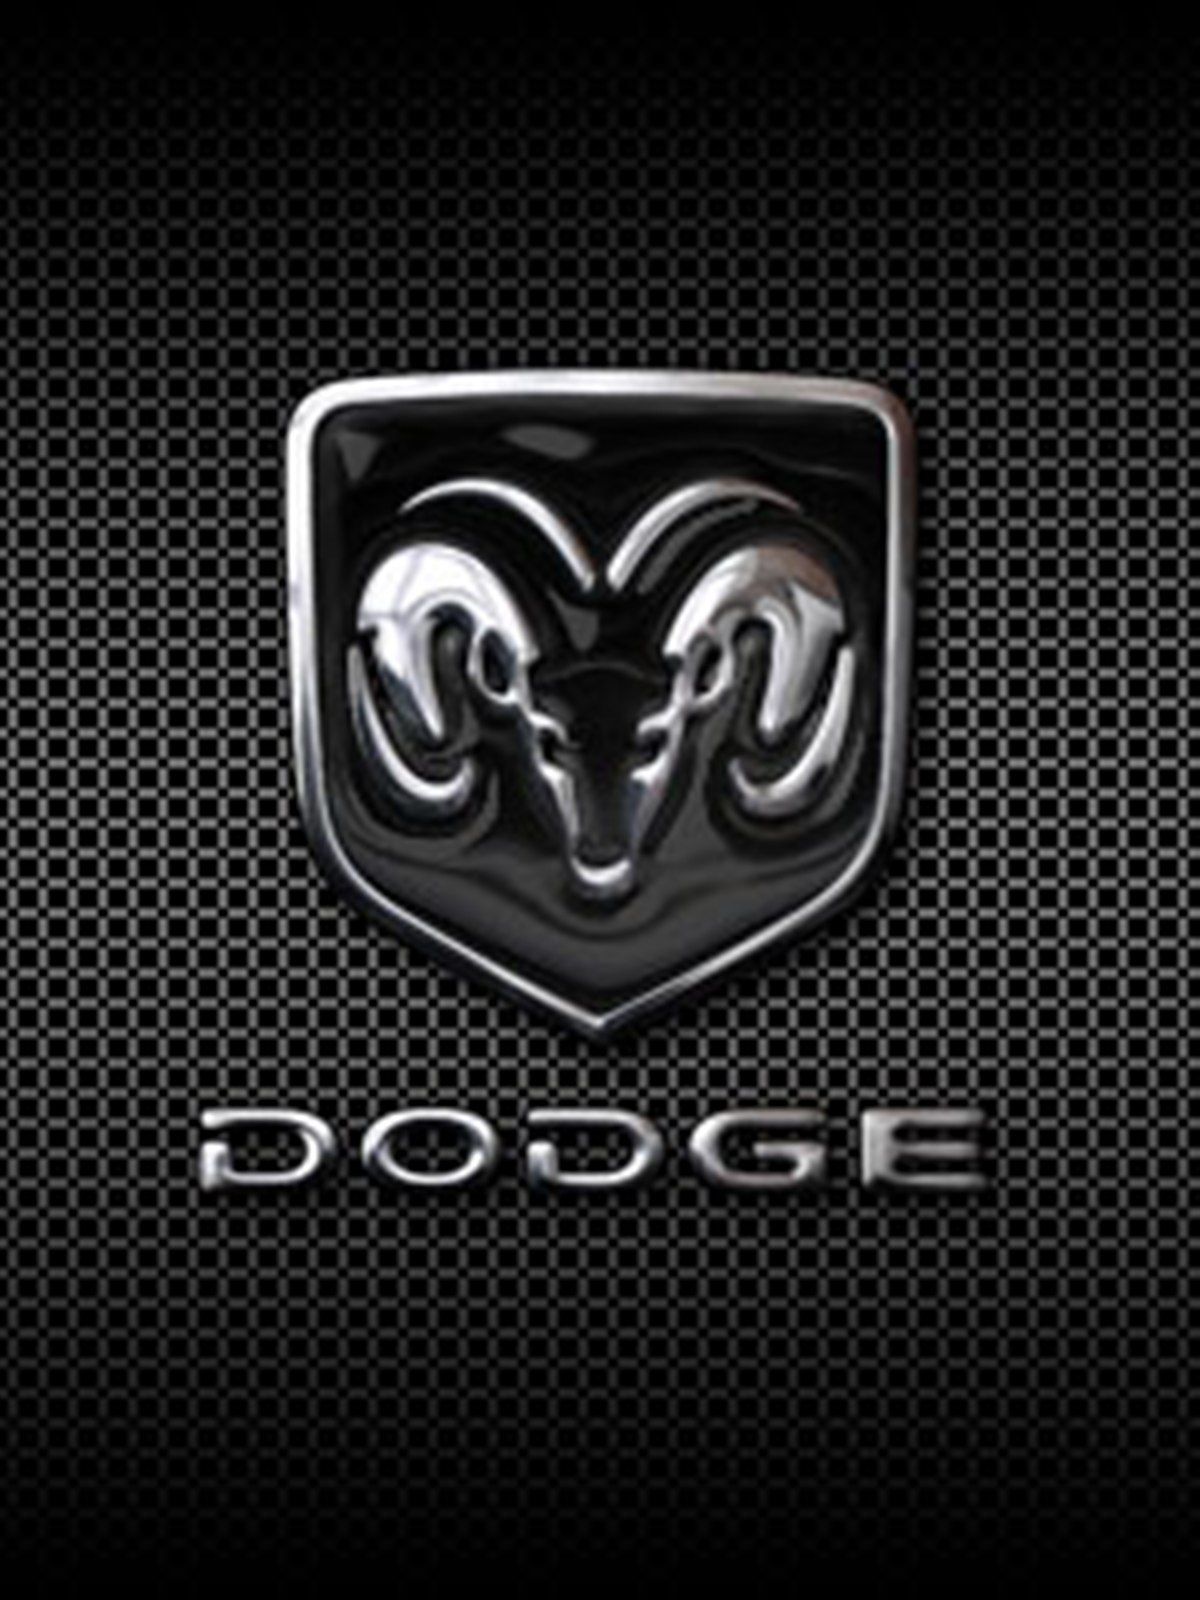 Dodge Logo Phone Wallpaper Projekty Do Wypr Bowania